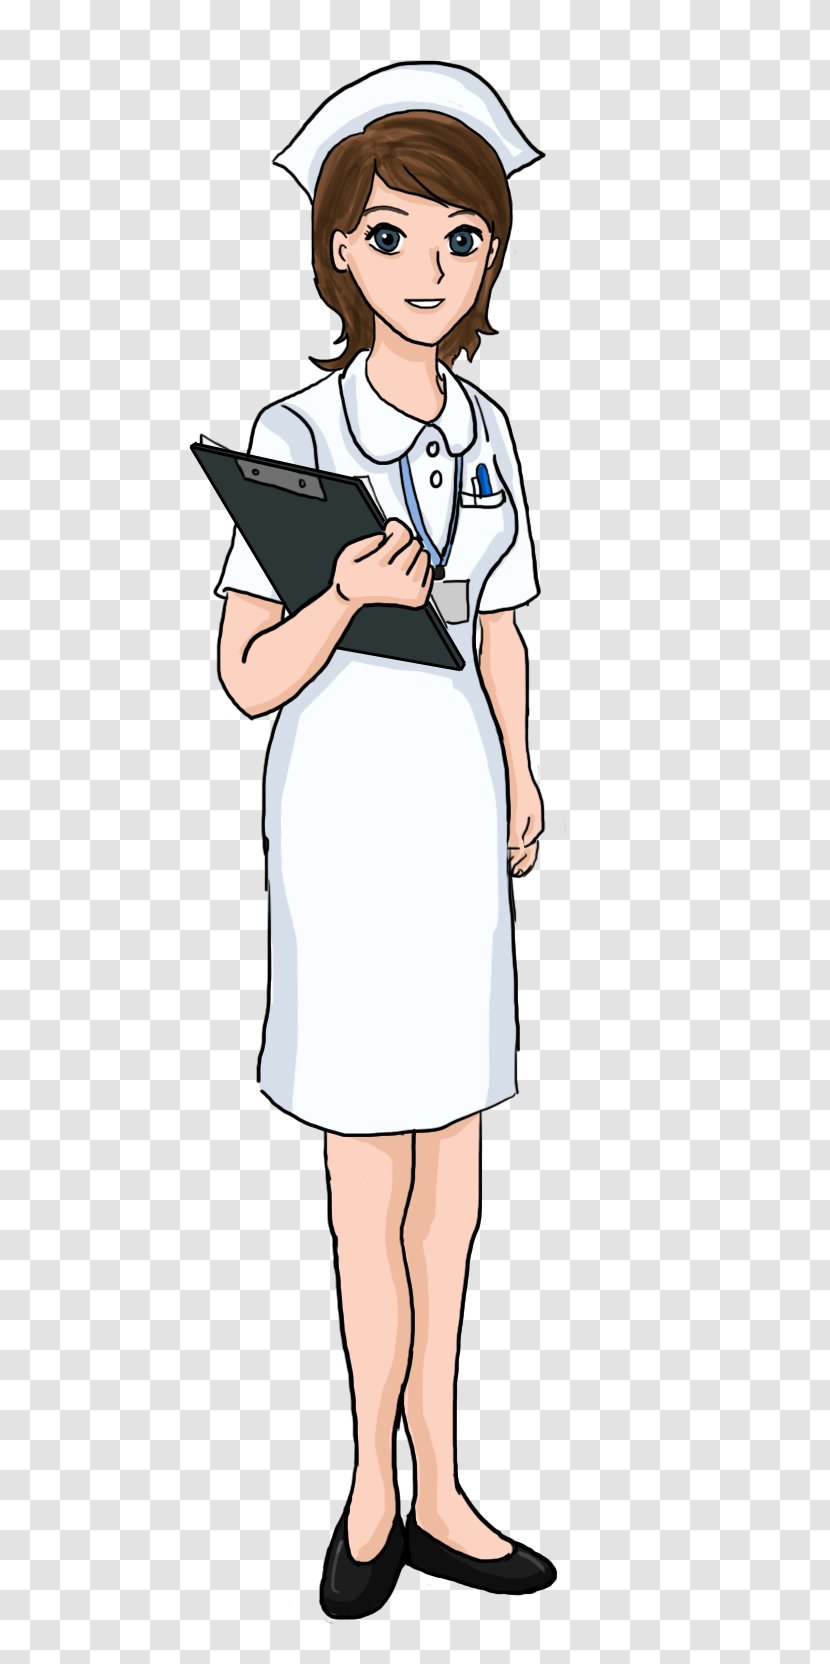 Nursing Free Content Download Clip Art - Heart - Nurse Cliparts Transparent PNG